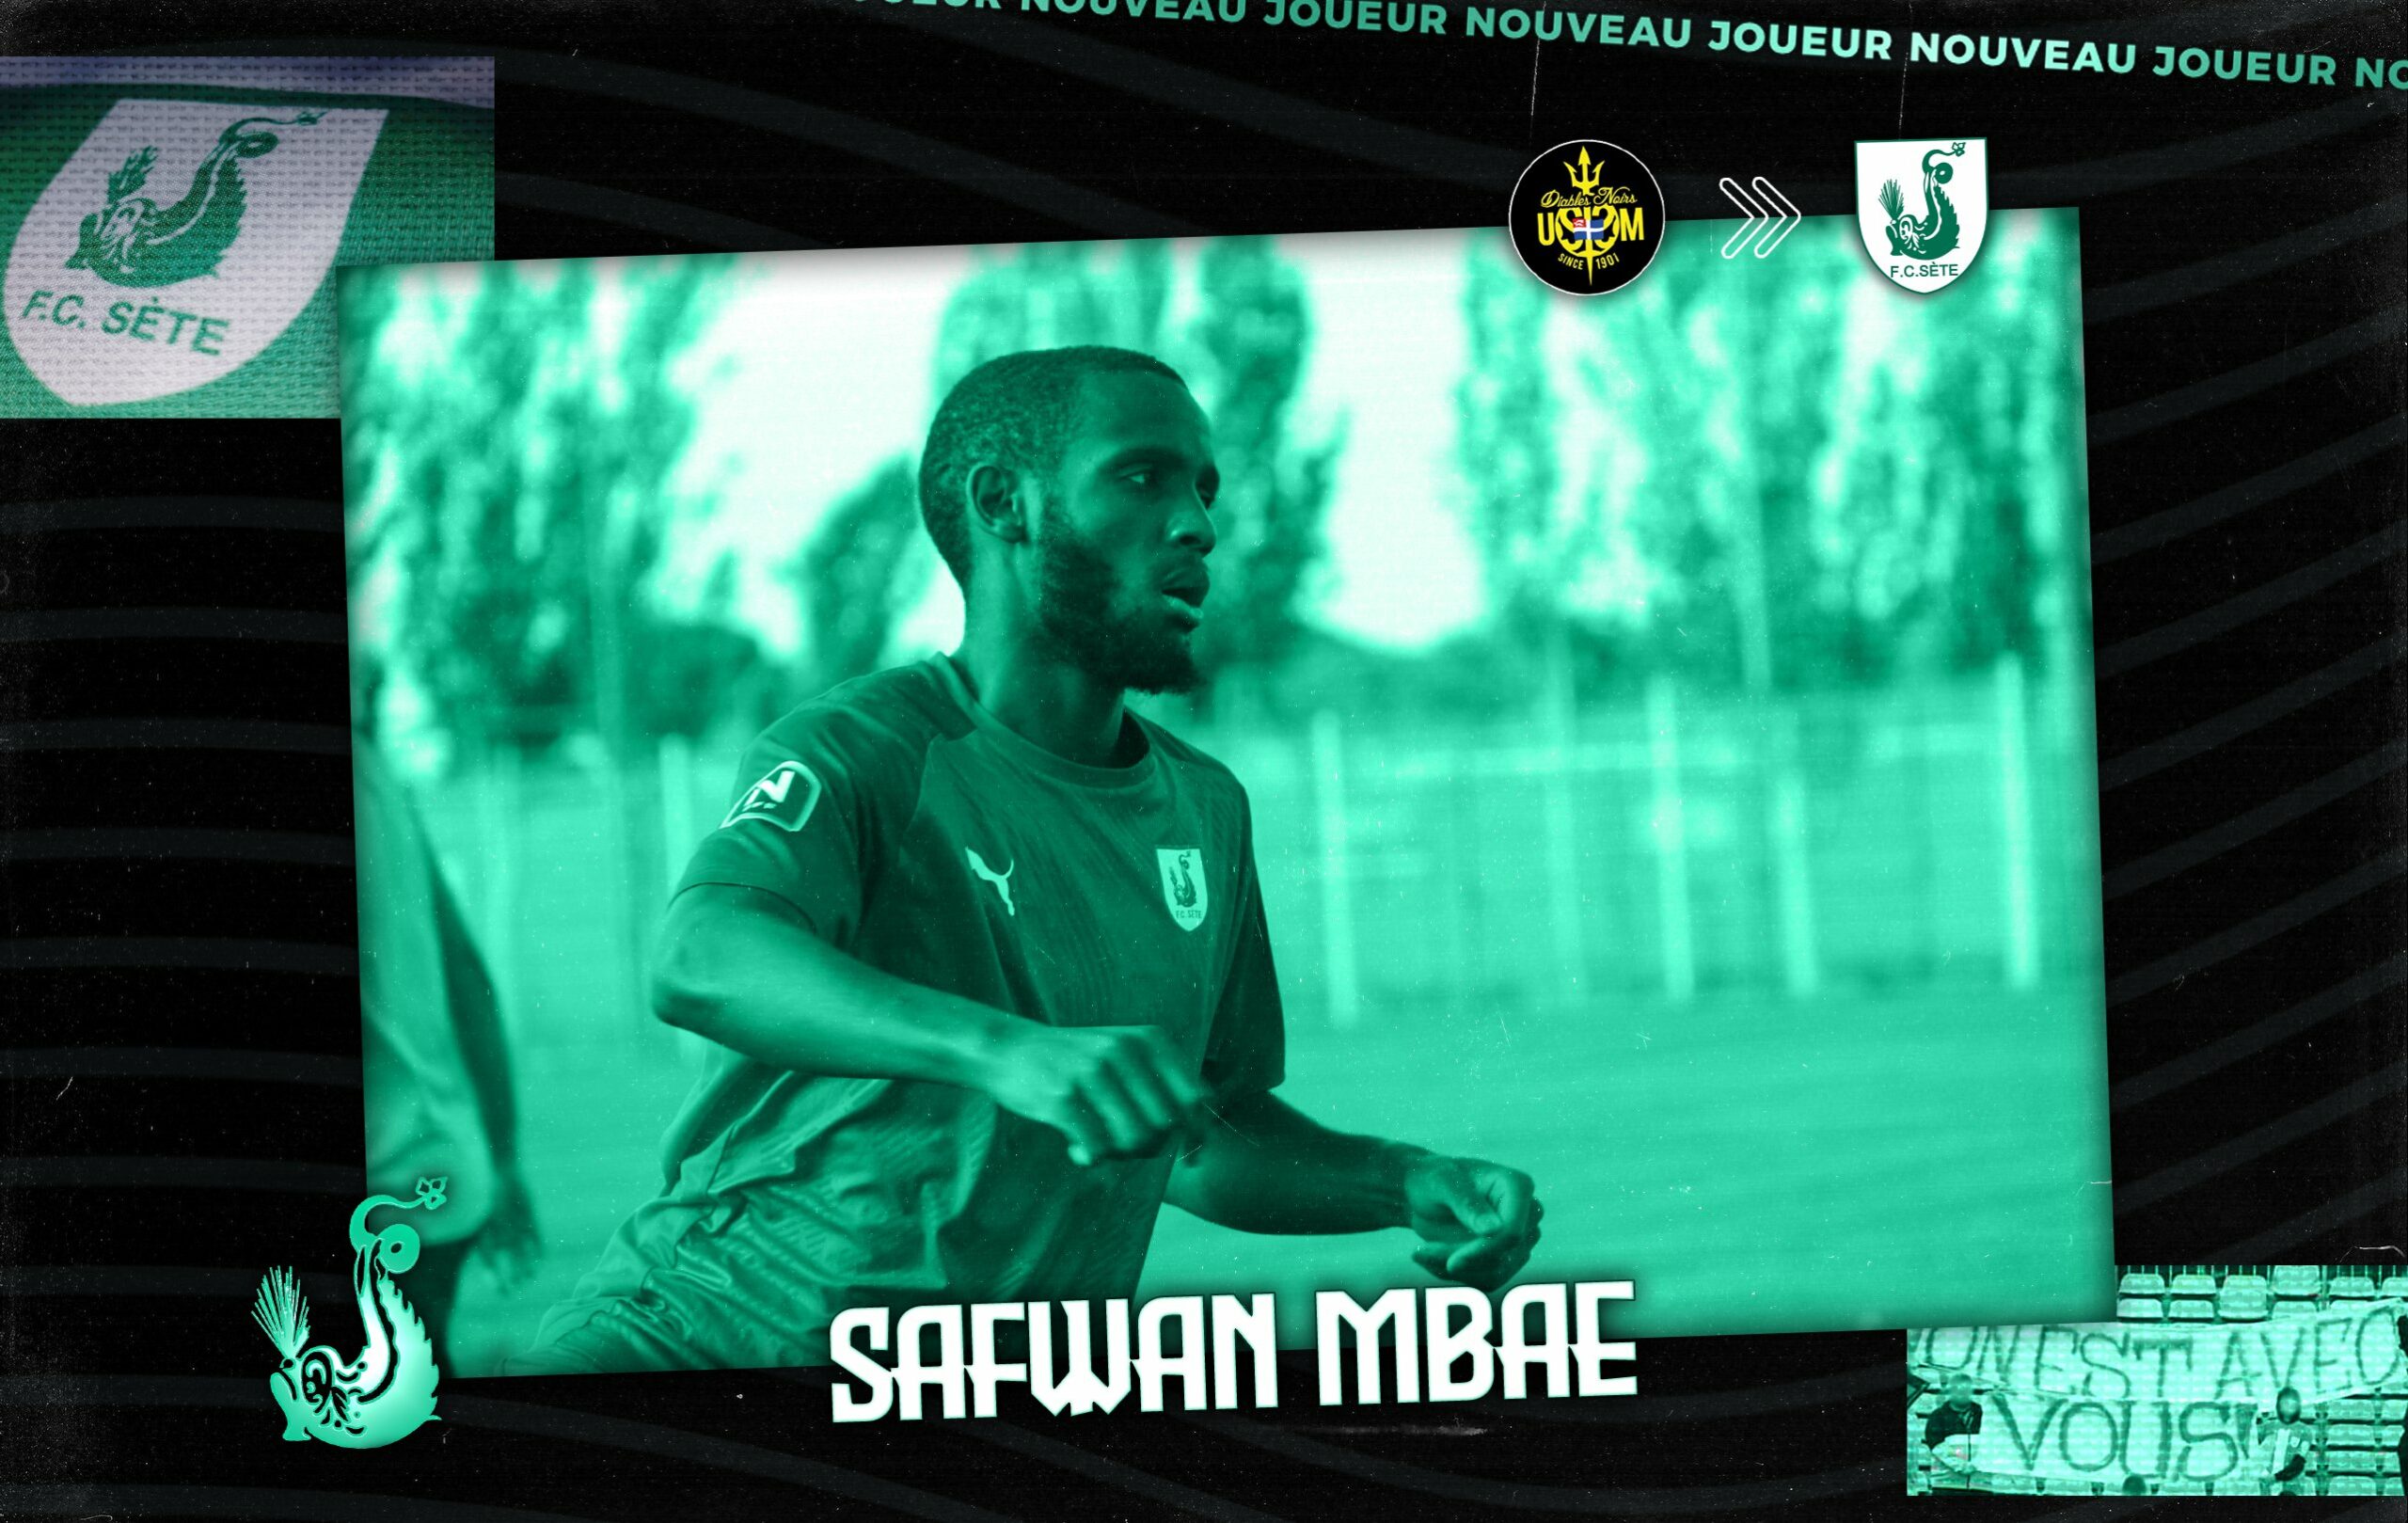 Safwan Mbae, Safwan Mbae rejoint le FC Sète, Mzaouiyani à Masfout SC, Comoros Football 269 | Portail du football des Comores